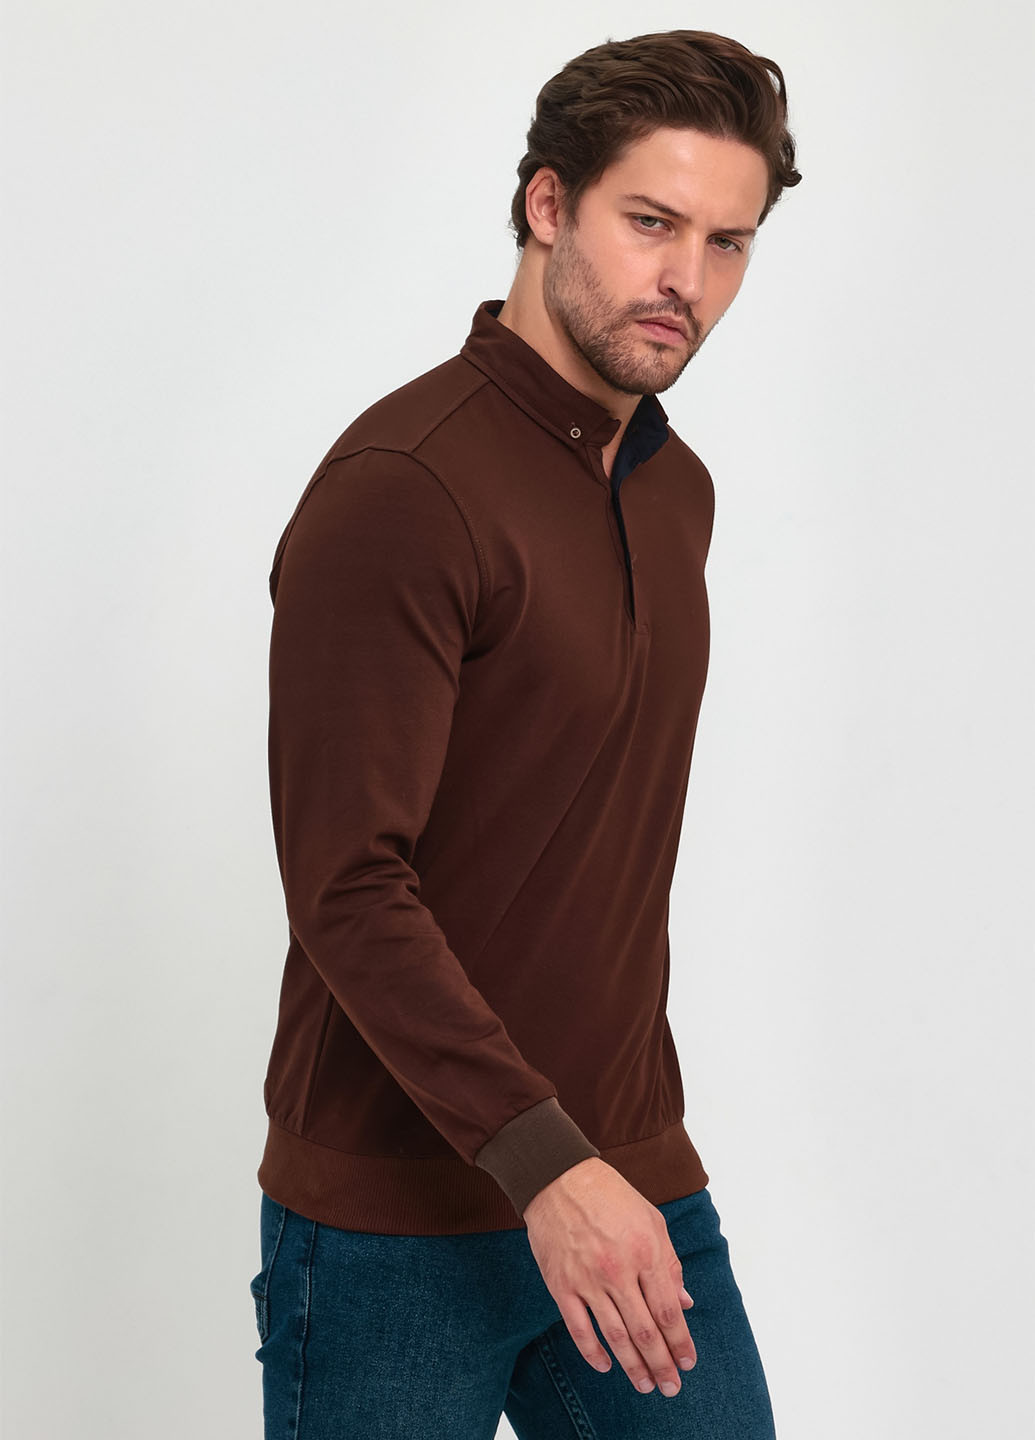 Коричневый демисезонный свитер джемпер Trend Collection